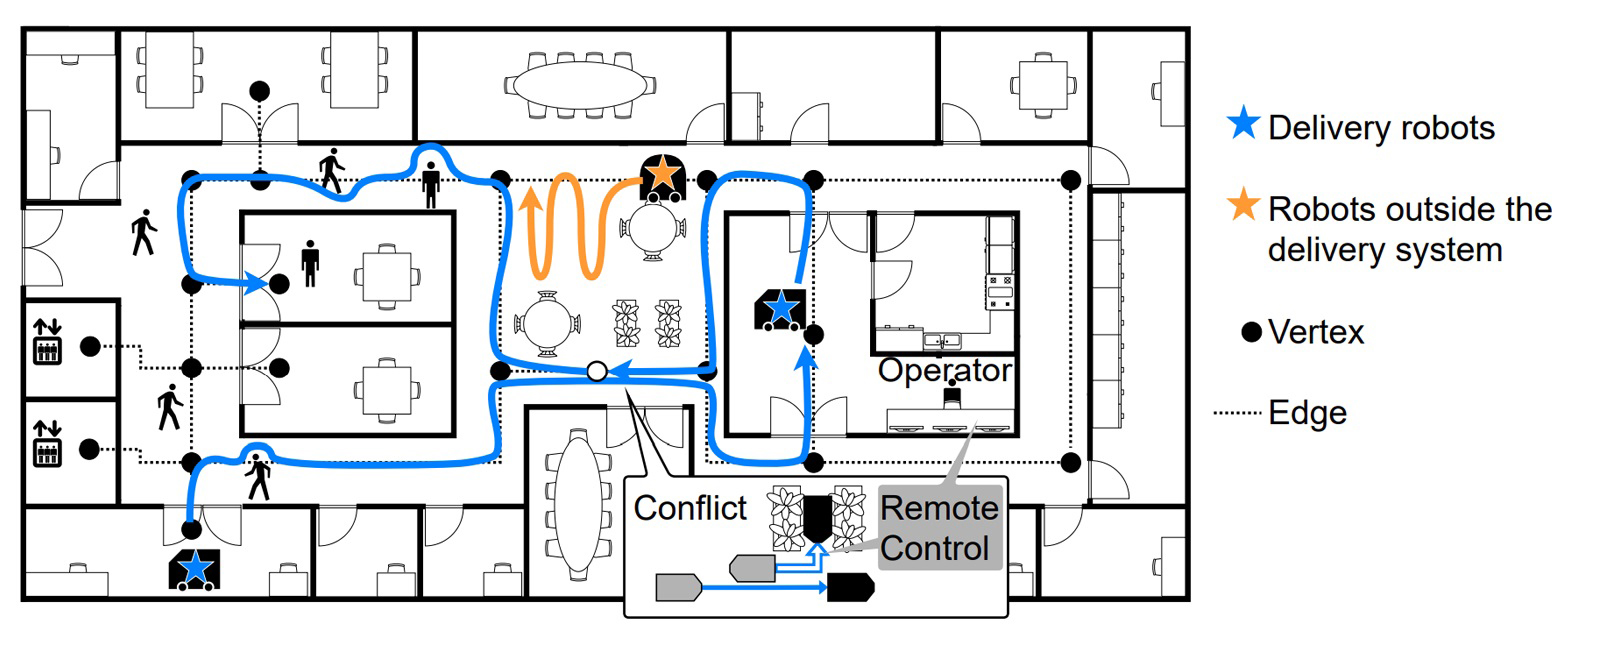 図1 ビル内ロボット配送における課題設定の概要